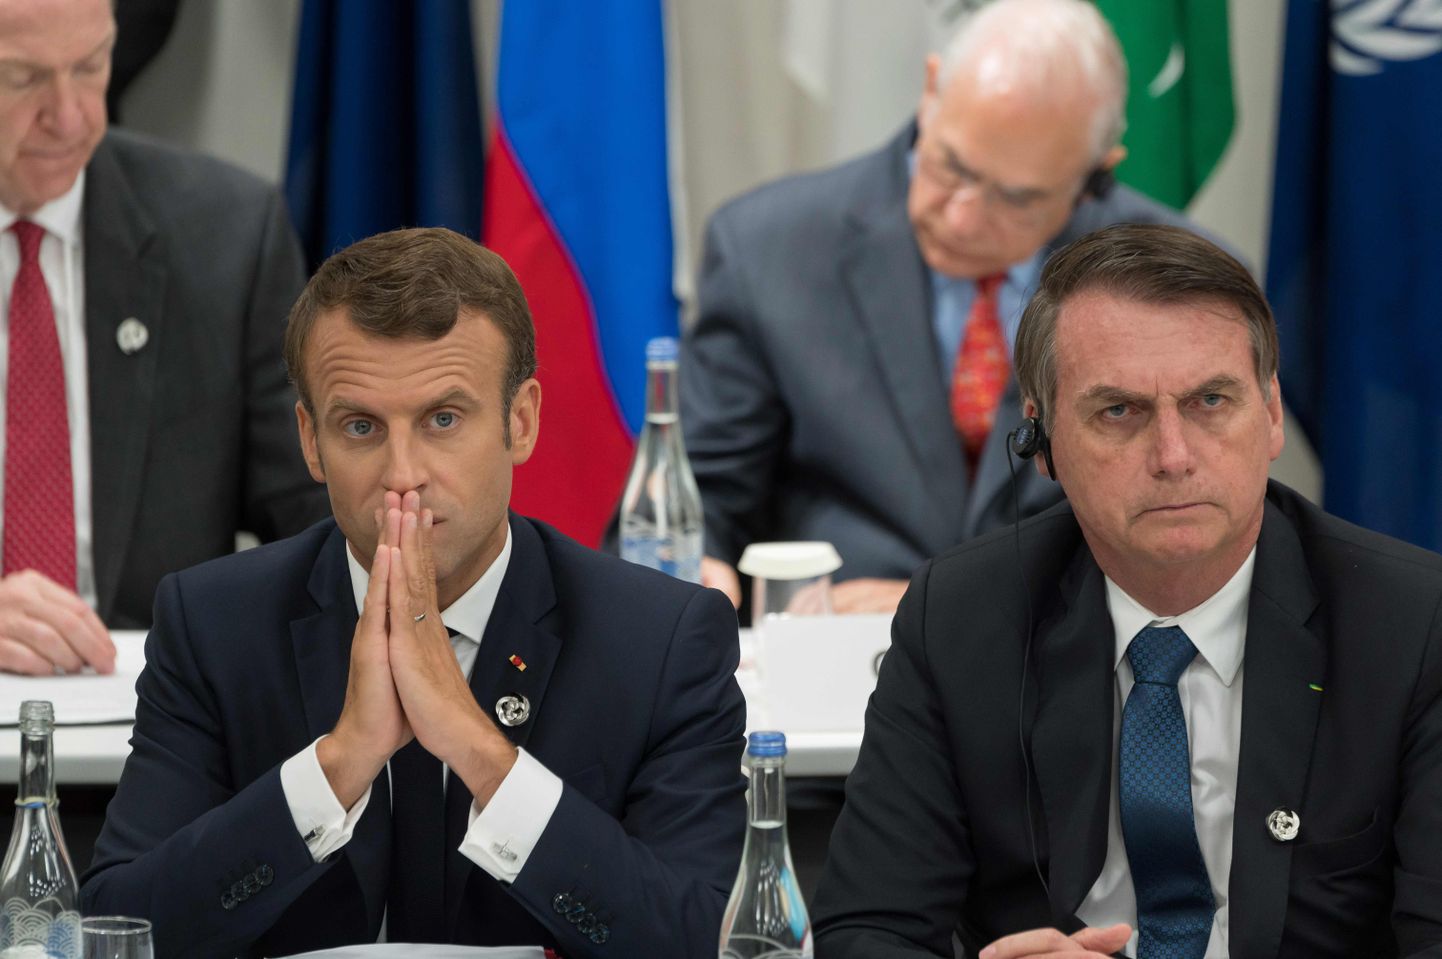 Prantsuse president Emmanuel Macron (vasakul) ja Brasiilia president Jair Bolsonaro 28. juunil Jaapanis Osakas G20 tippkohtumisel.